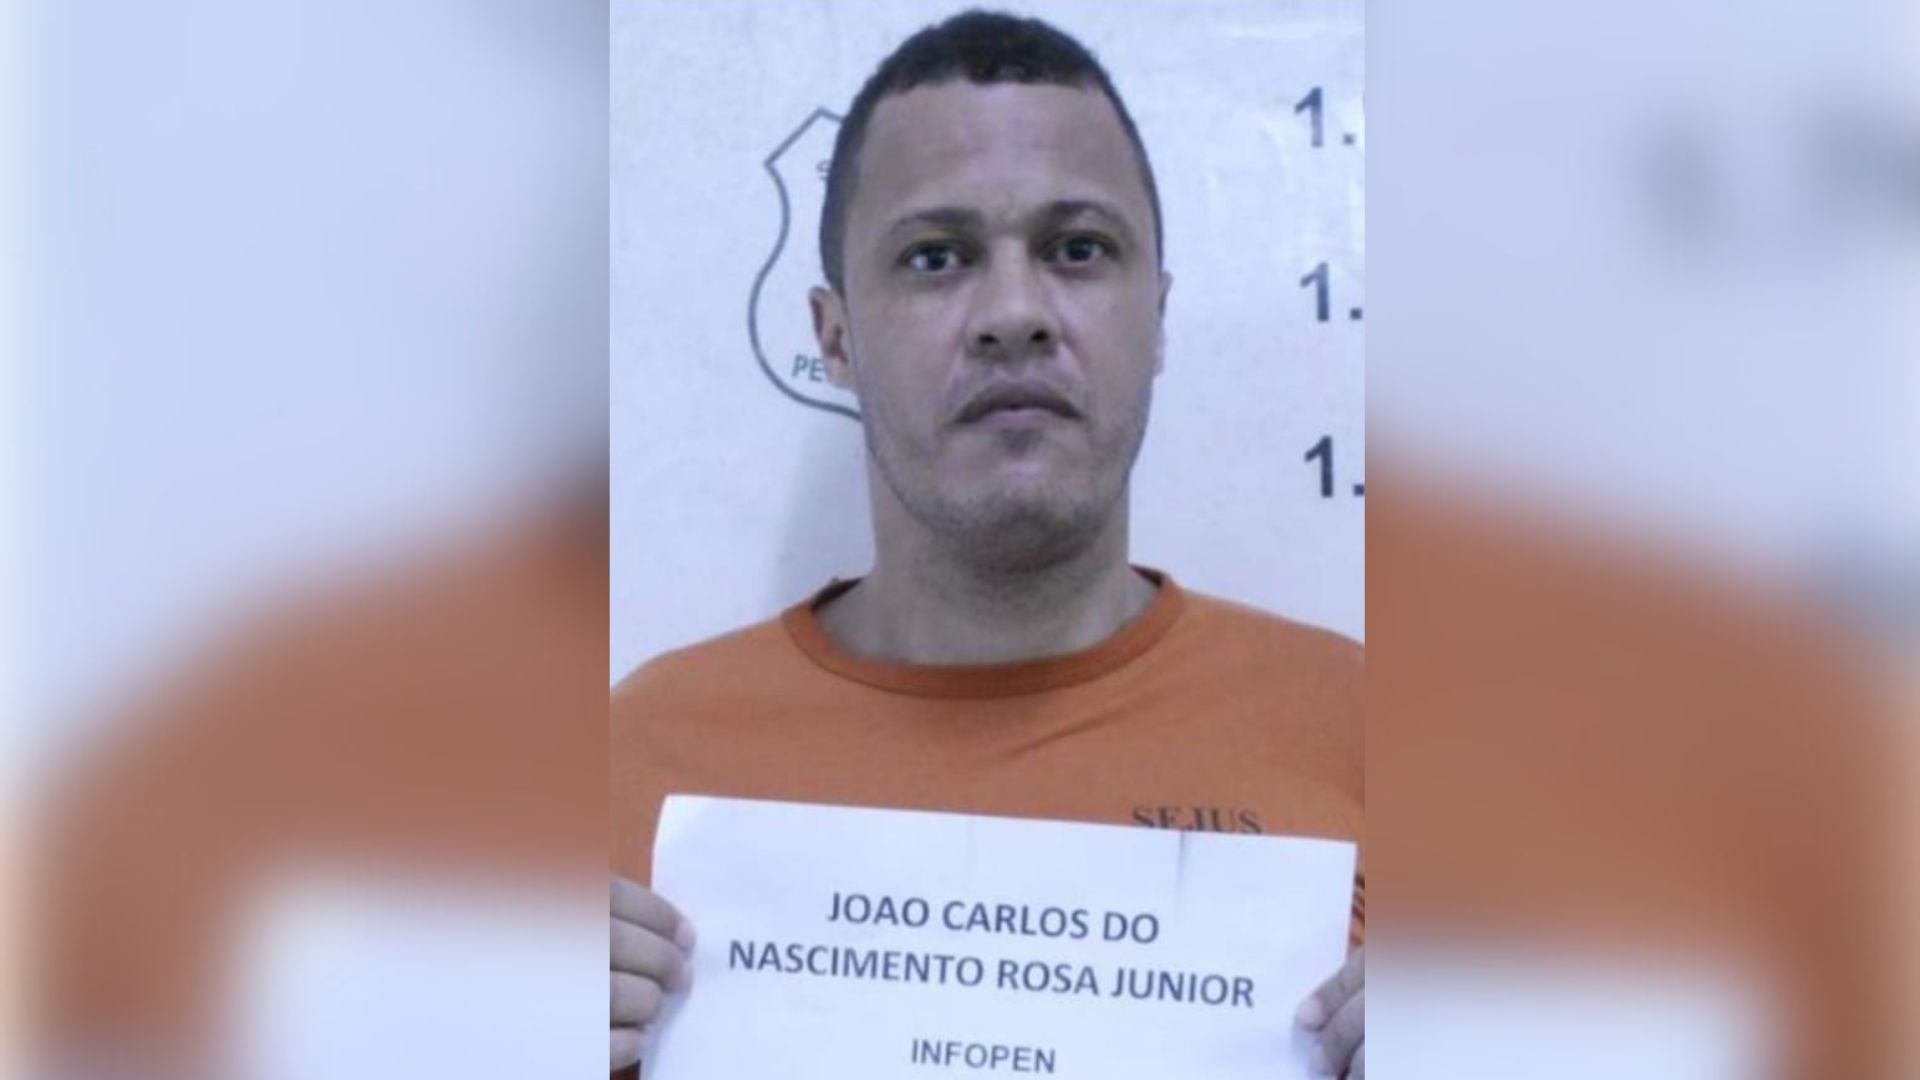 José Carlos do Nascimento Rosa Junior, de 37 anos, já estava próximo ao presídio quando foi baleado. A motivação do crime ainda é desconhecida